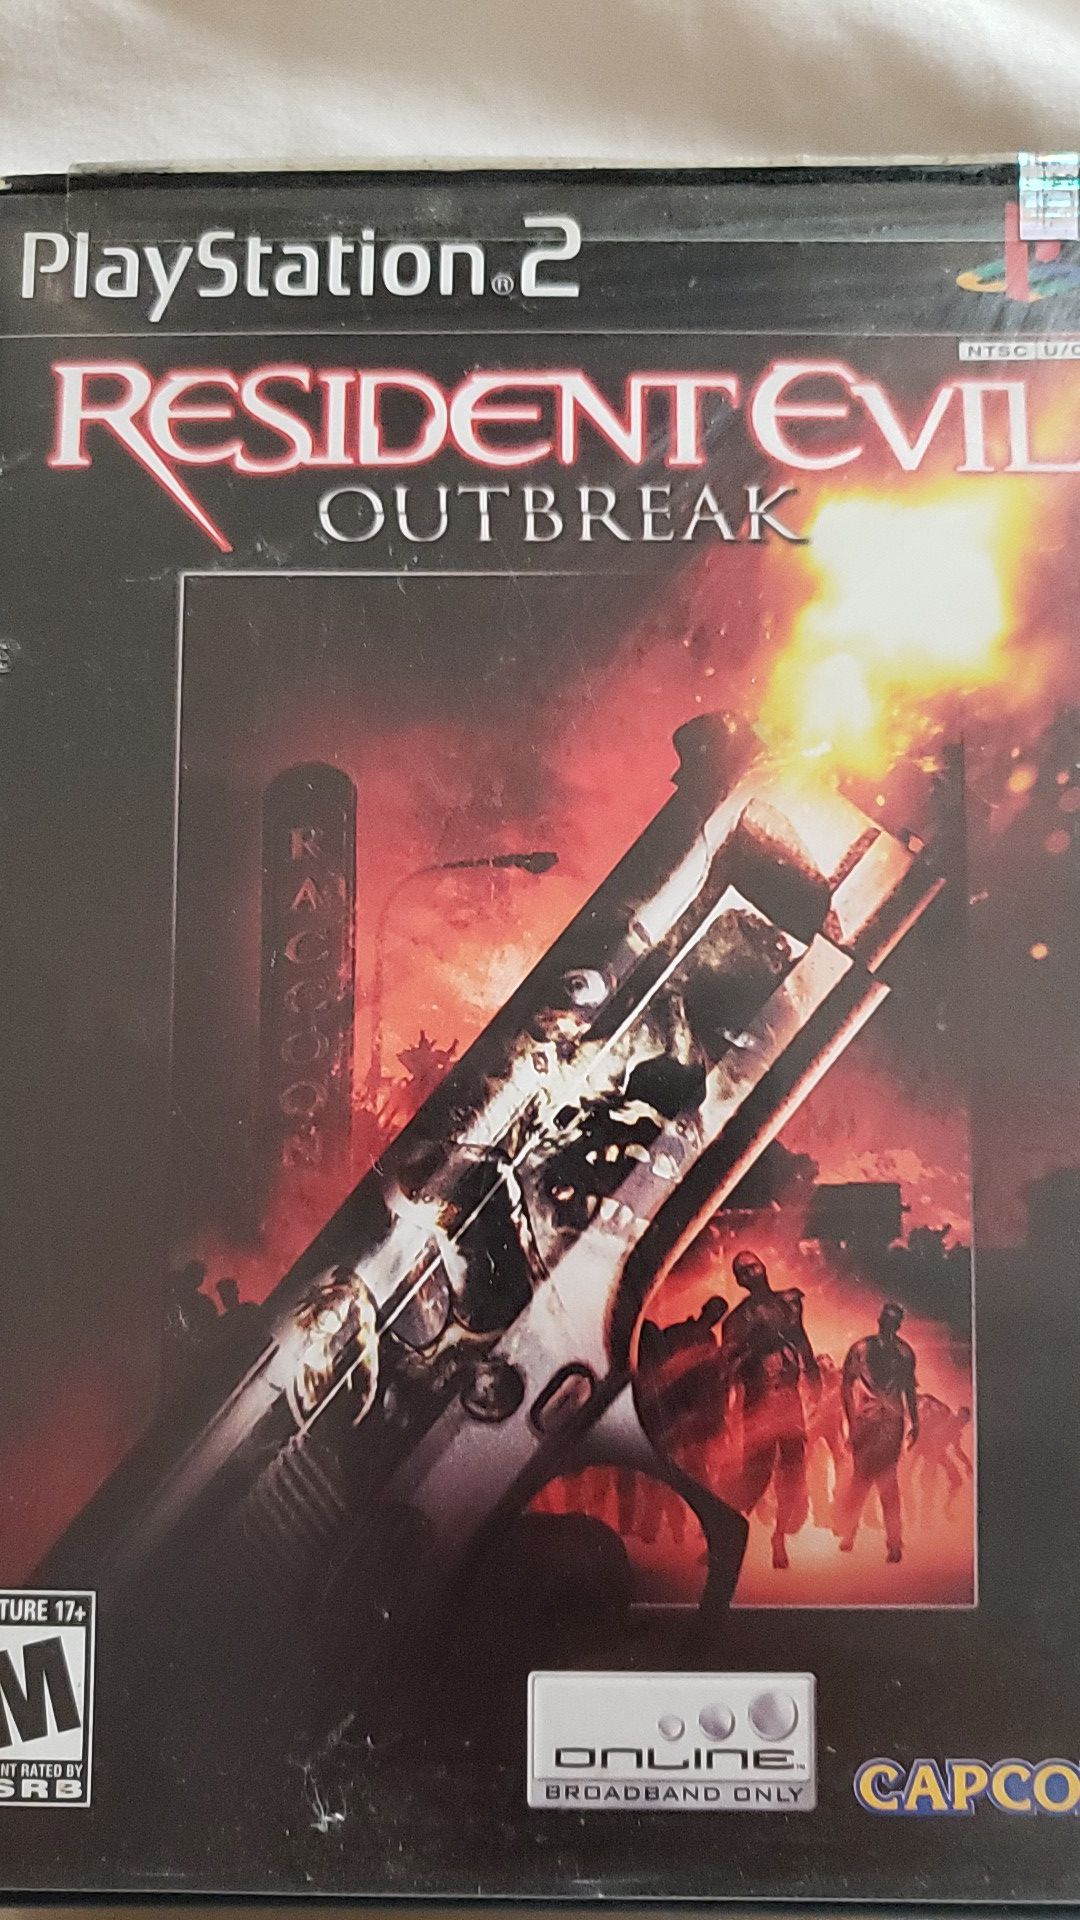 Resident evil outbreak ps2 $10